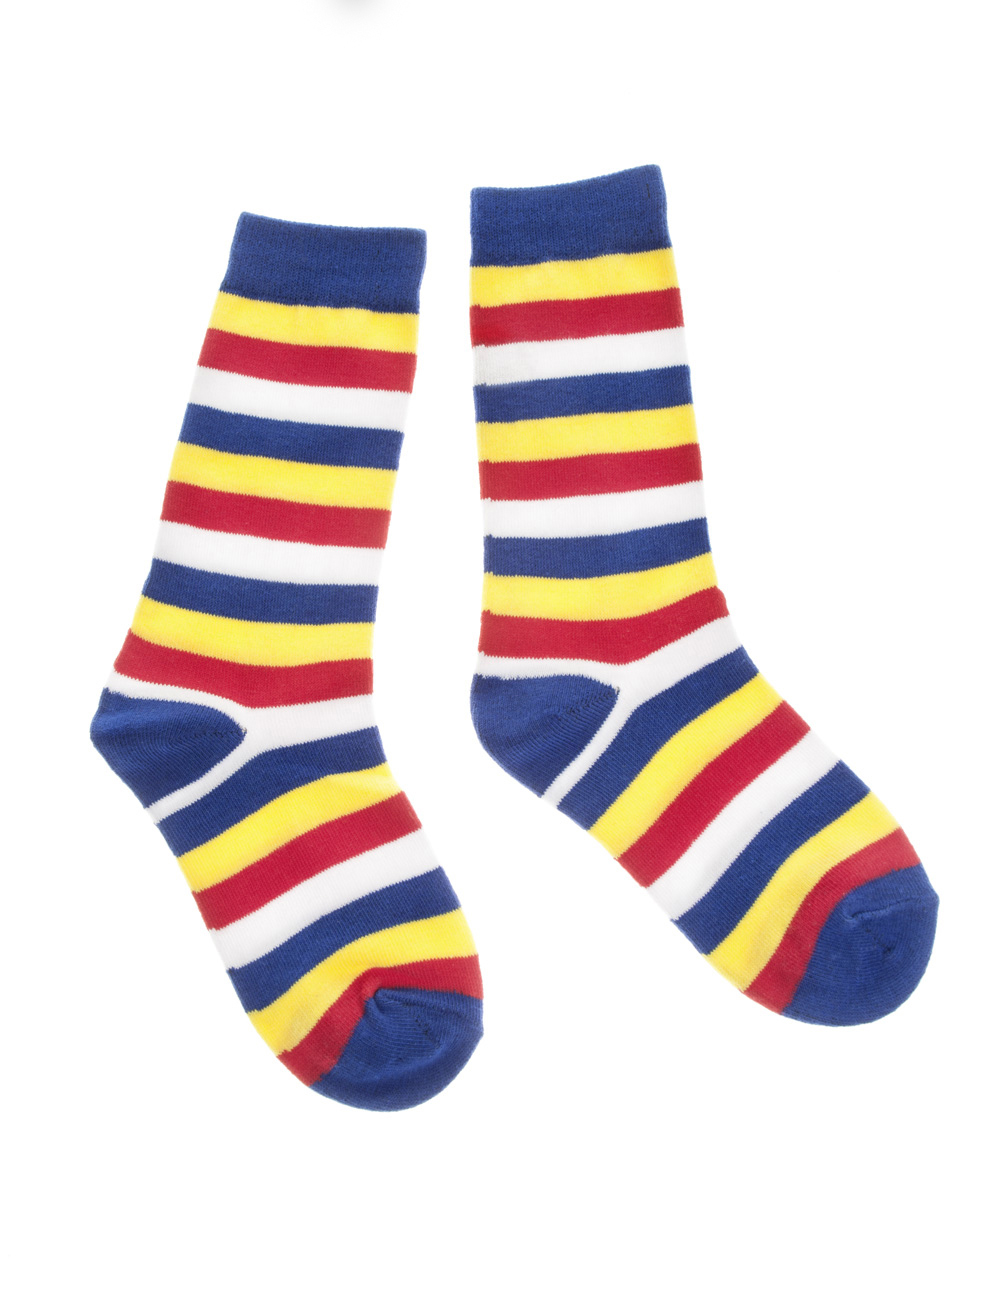 Socken gestreift rot/weiß/blau/gelb 41-46